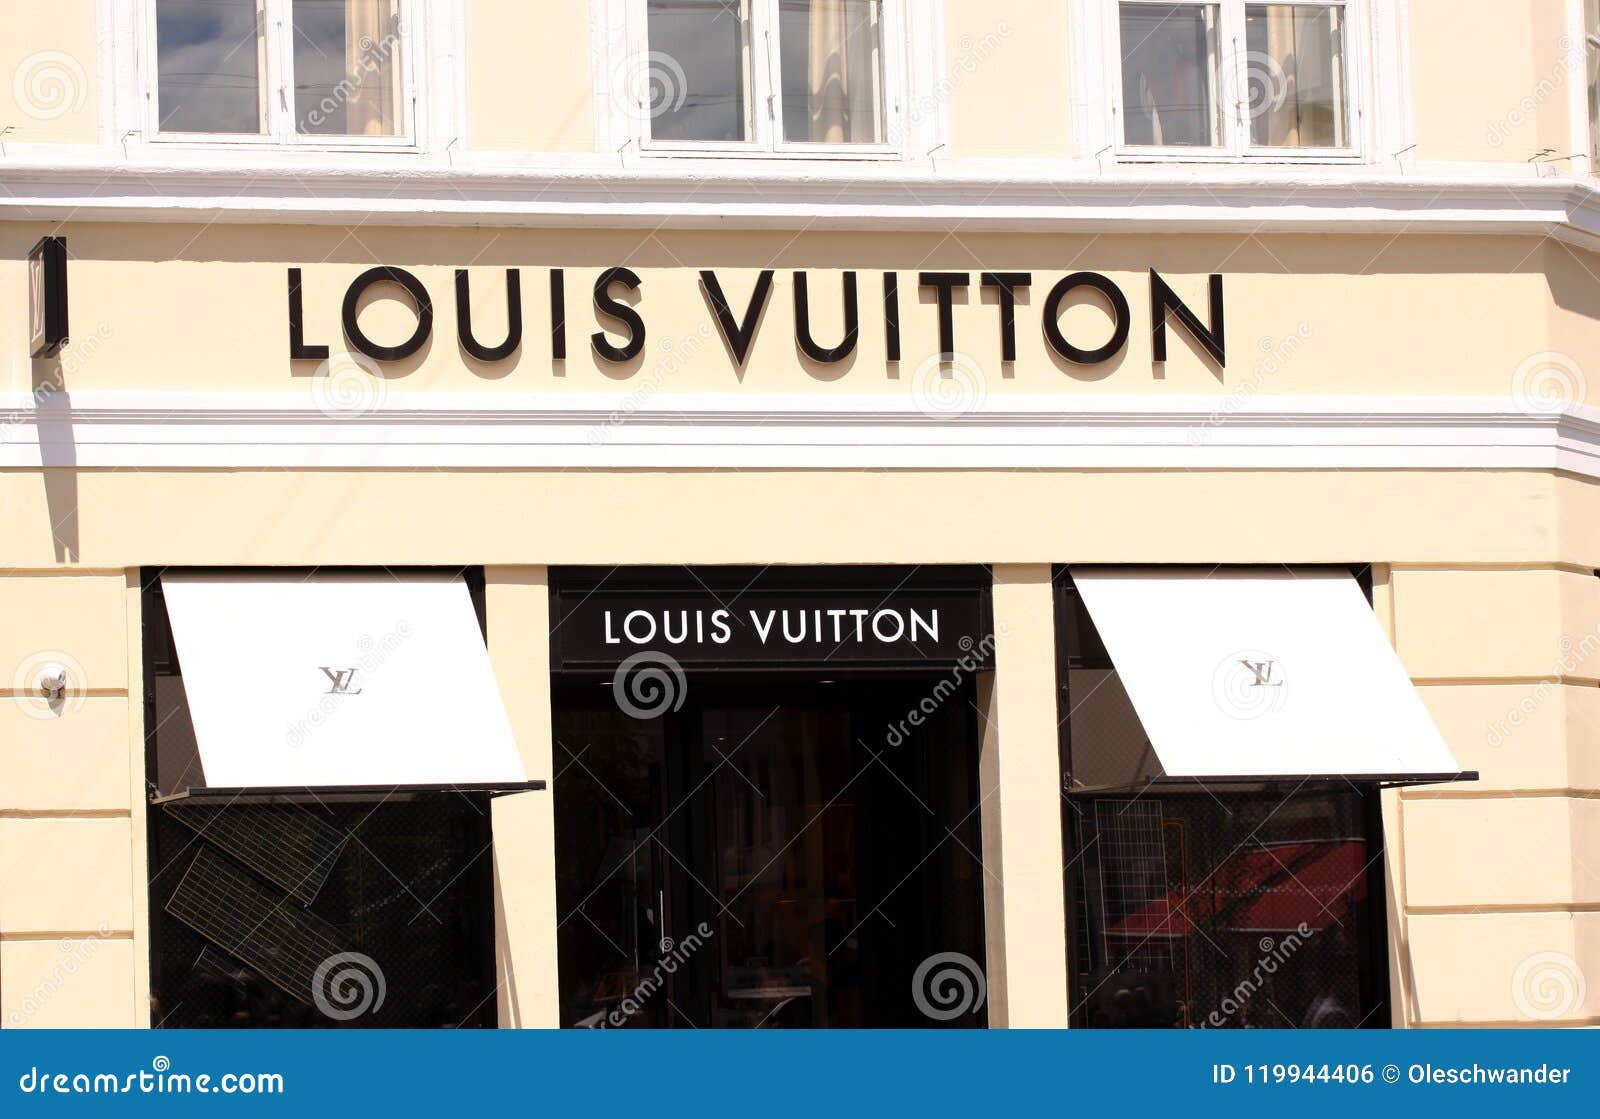 Louis Vuitton Logo Sign Panel on Shop. Louis Vuitton is a Famous